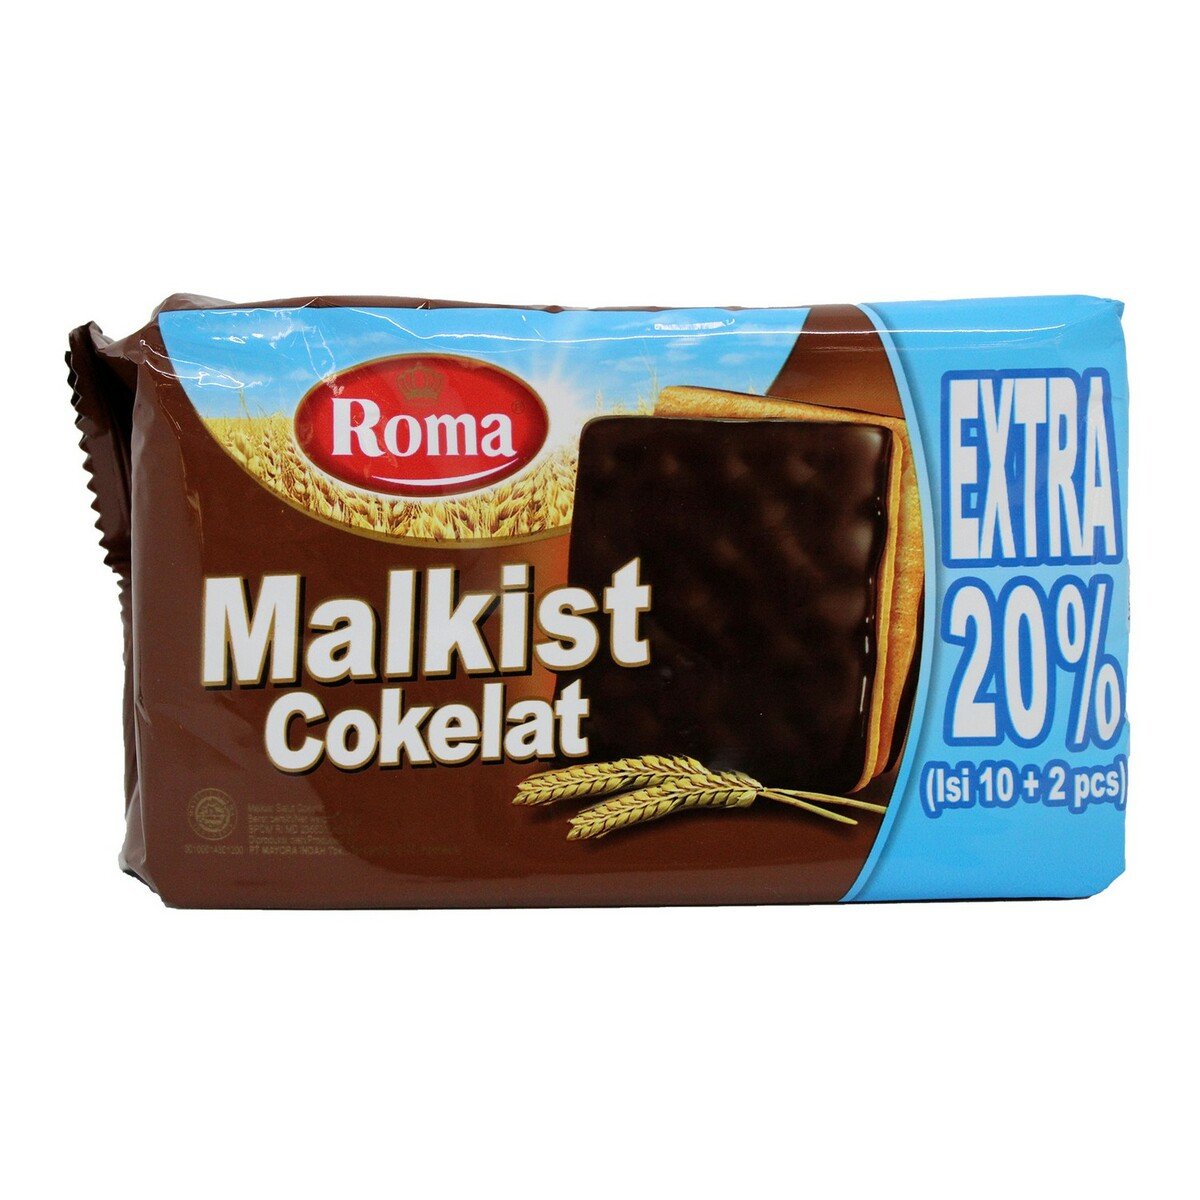 Roma Malkist Coklat 120g